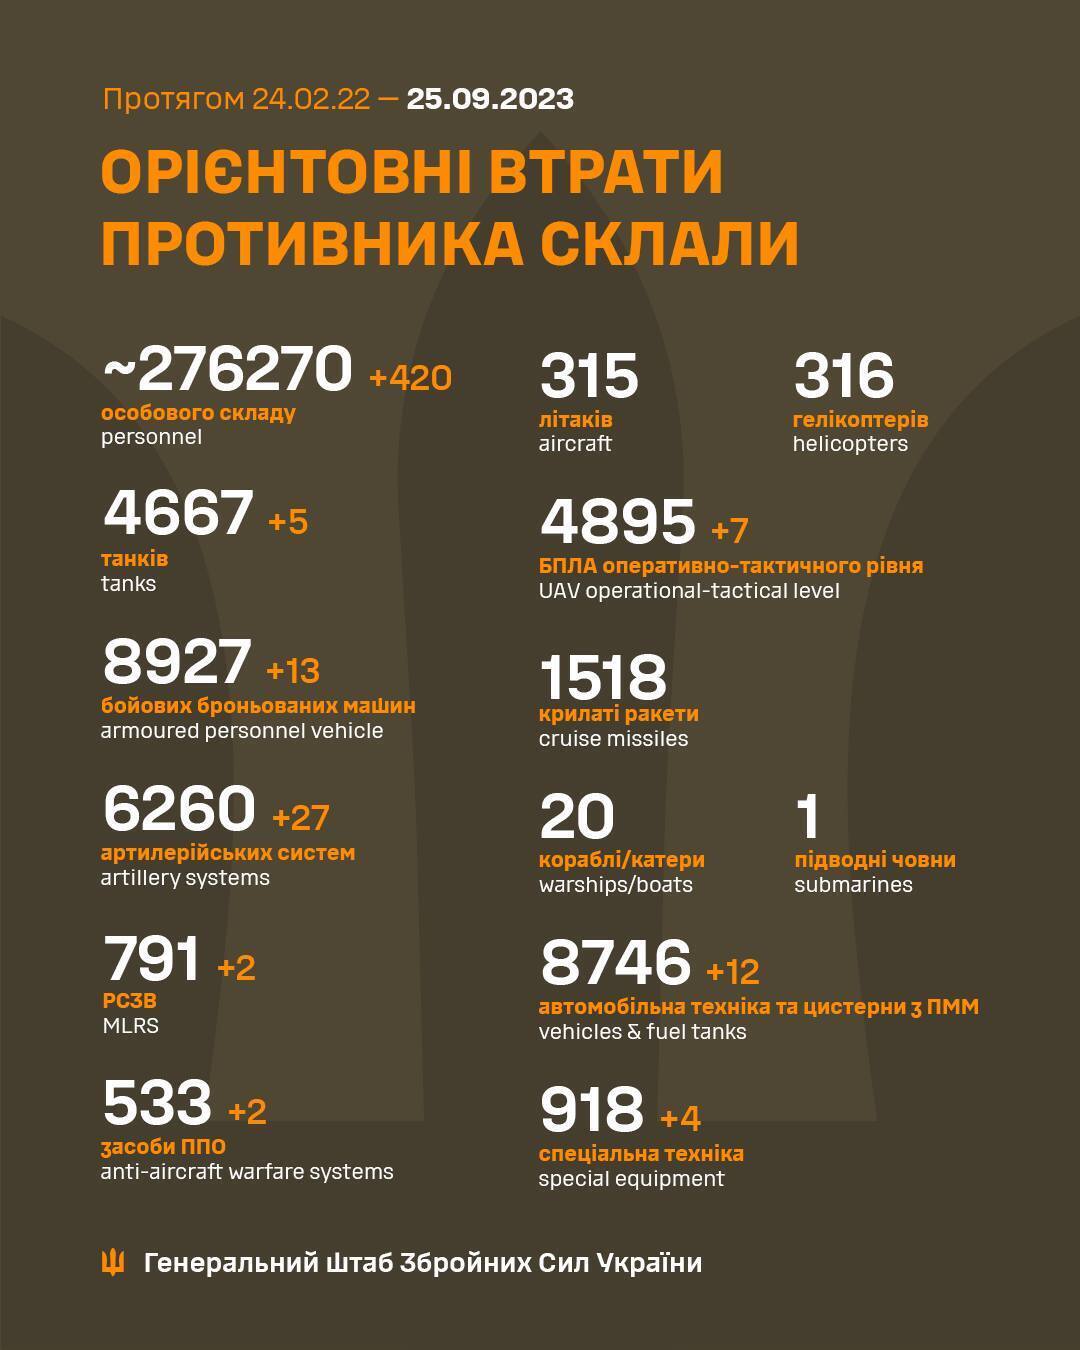 Воины ВСУ за сутки проредили армию РФ на 420 наемников и 13 бронемашин